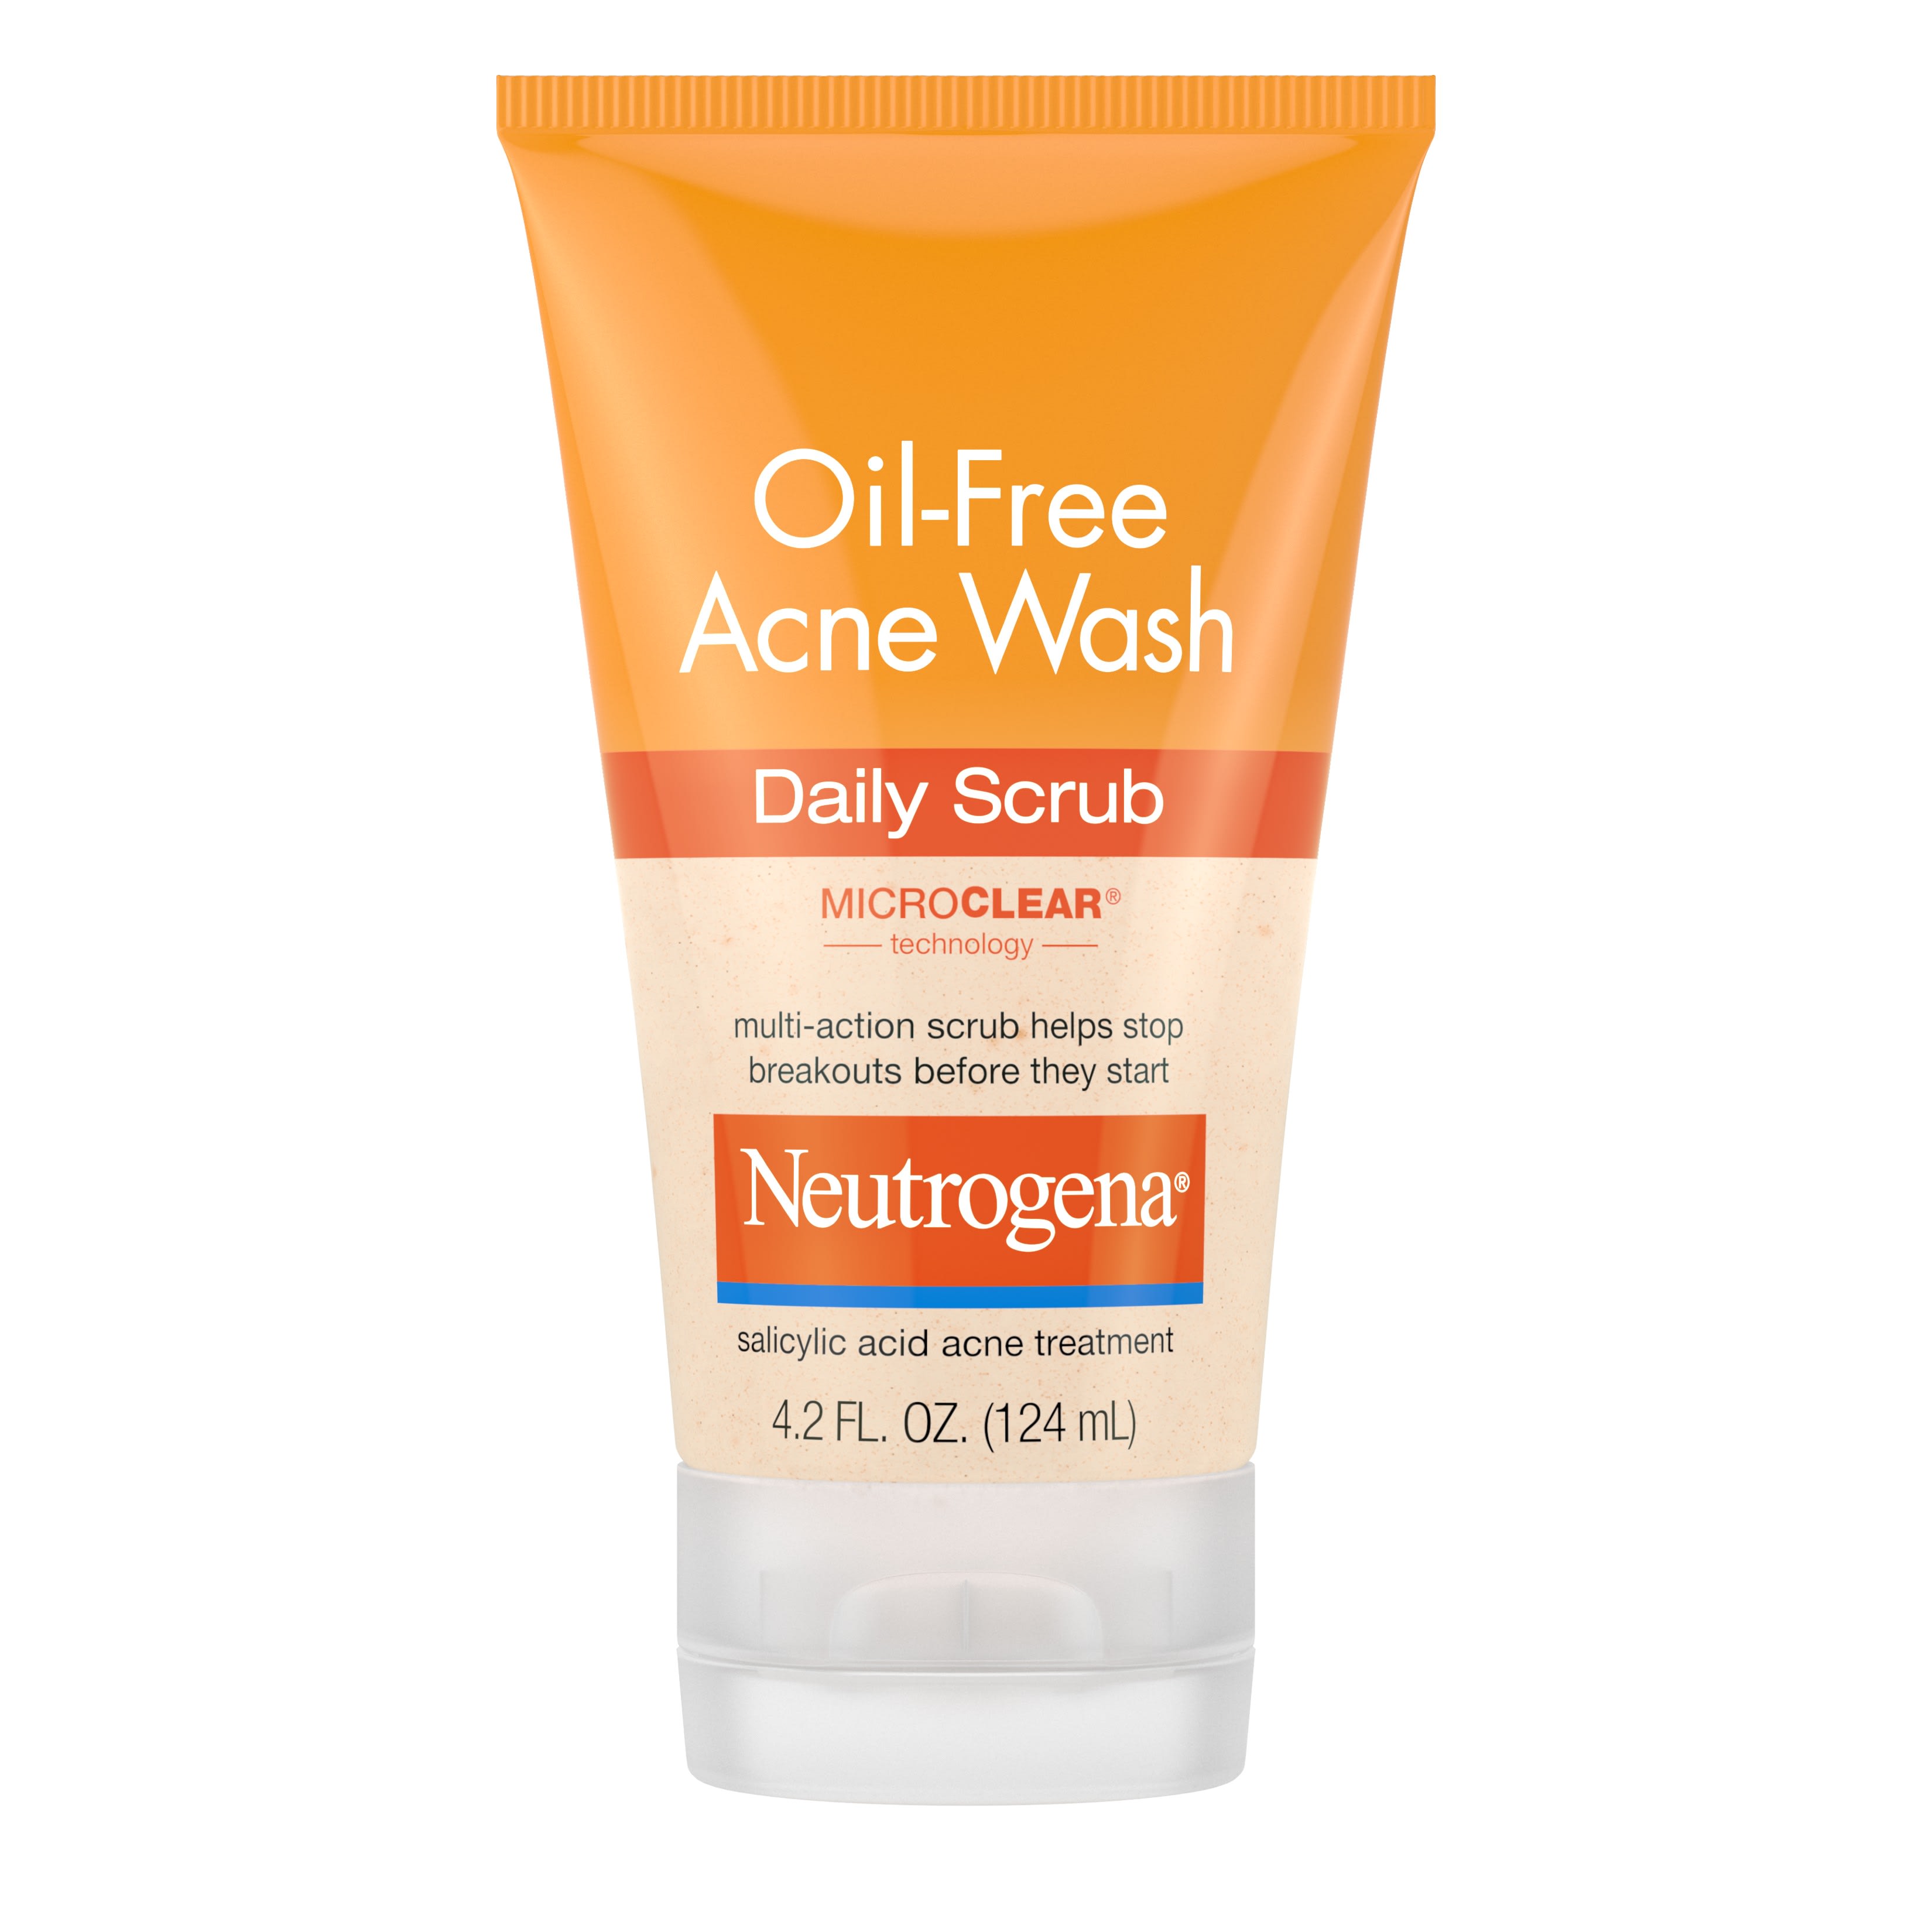 Neutrogena Oil-Free Acne Face Scrub with 2% Salicylic Acid, 4.2 fl. oz - image 1 of 8